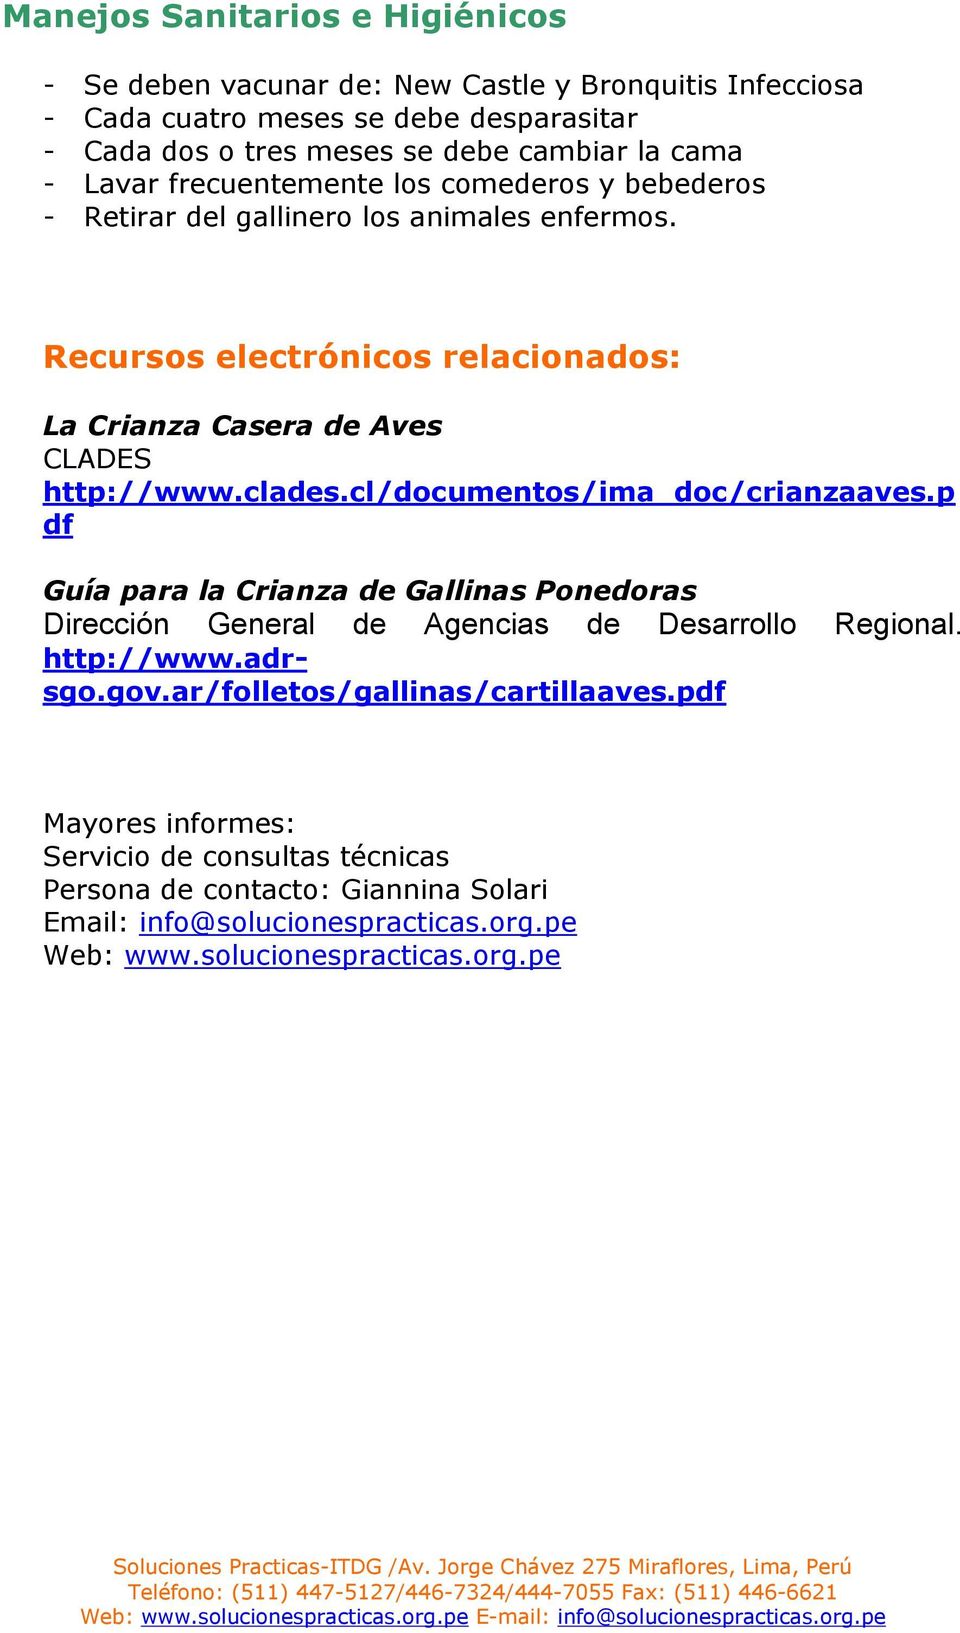 clades.cl/documentos/ima_doc/crianzaaves.p df Guía para la Crianza de Gallinas Ponedoras Dirección General de Agencias de Desarrollo Regional. http://www.adrsgo.gov.